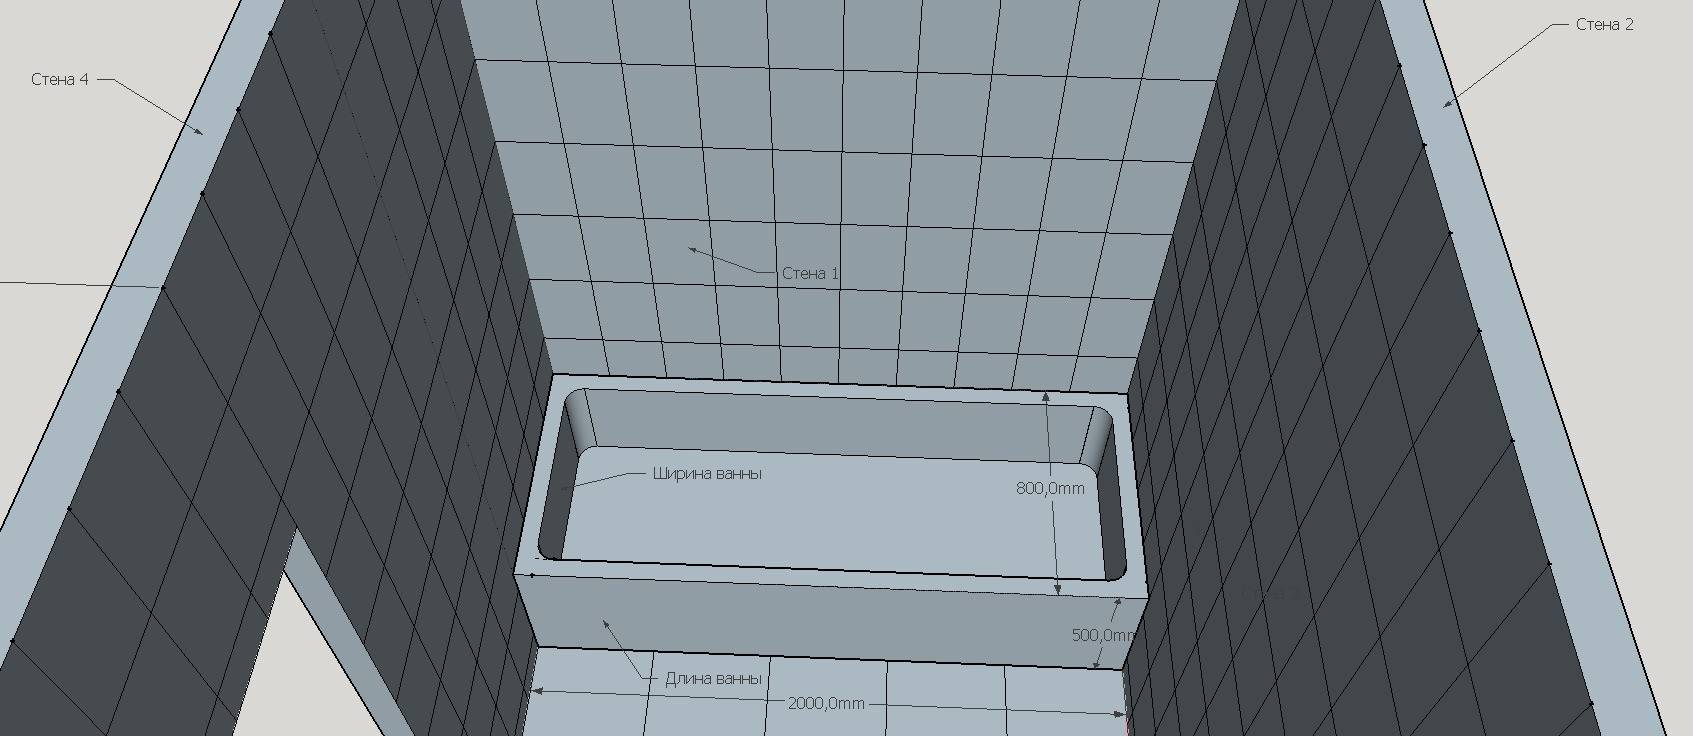 Как рассчитать площадь плитки. Калькулятор плитки для ванной. Высота плитки в санузлах. Плитка в ванную комнату толщина. Подсчет плитки в ванной.